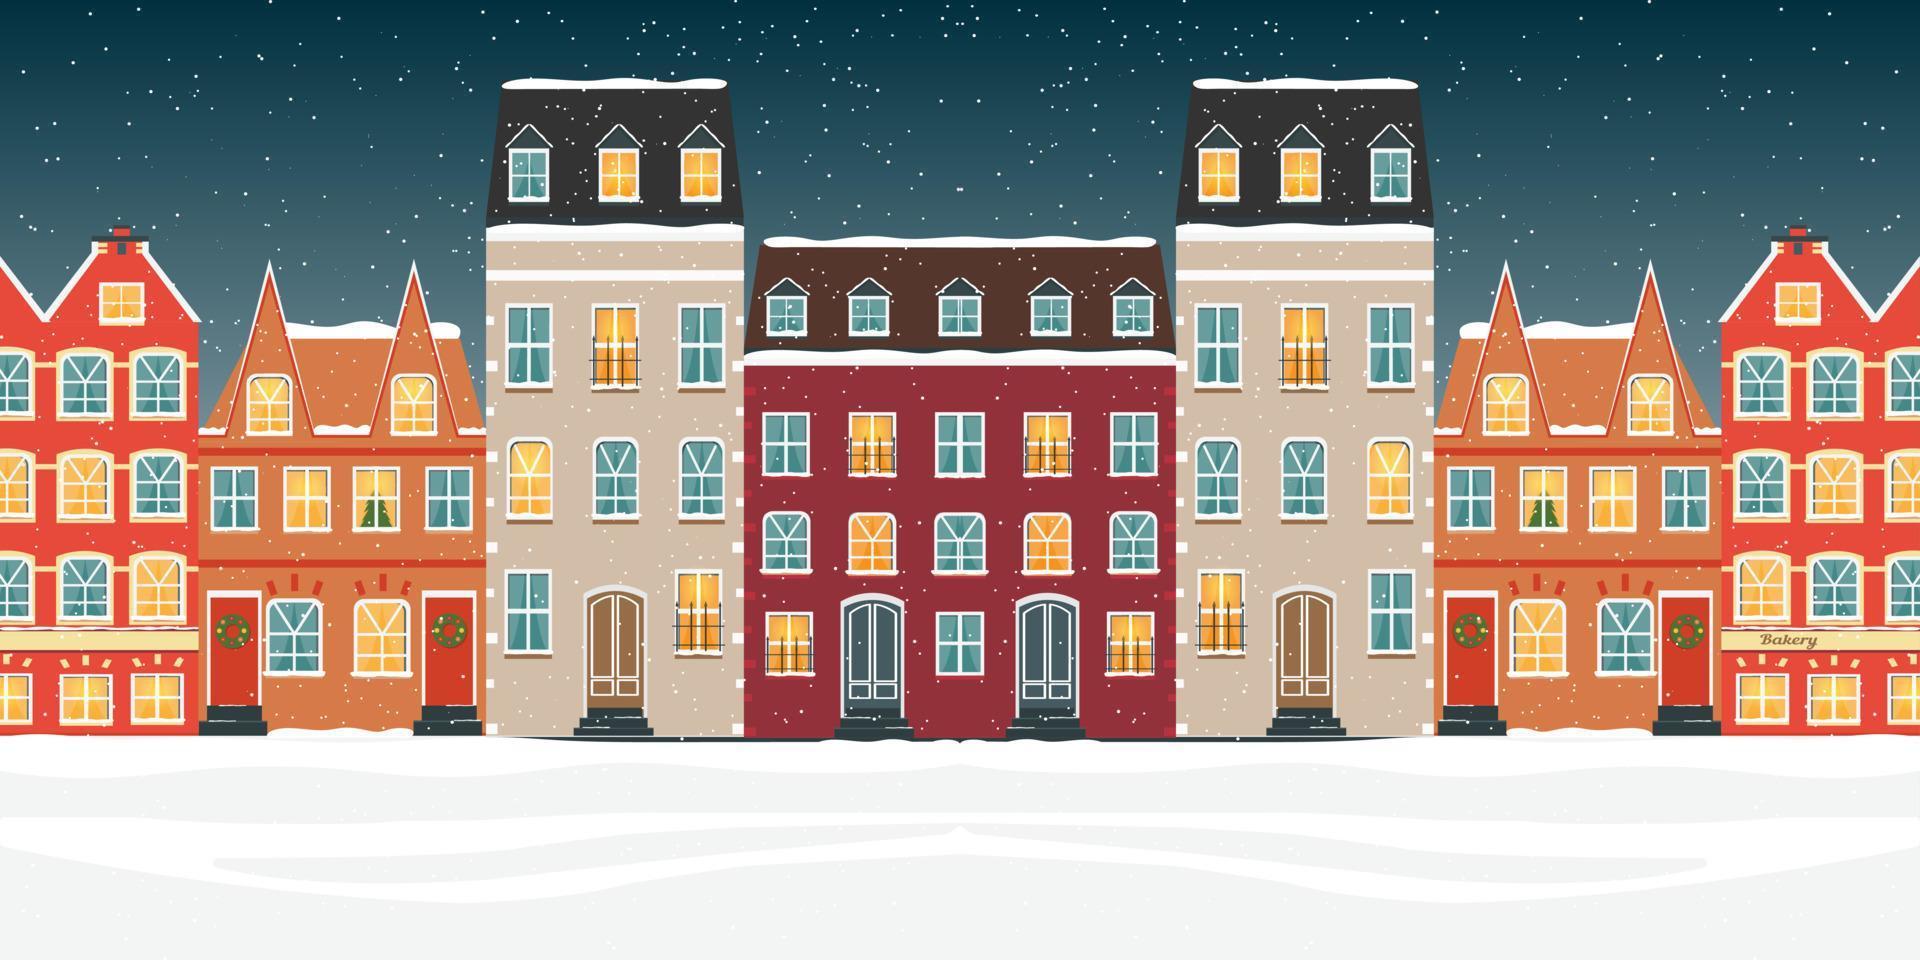 scandi kleurrijke huizen. scandinavische stijl stad achtergrond vector